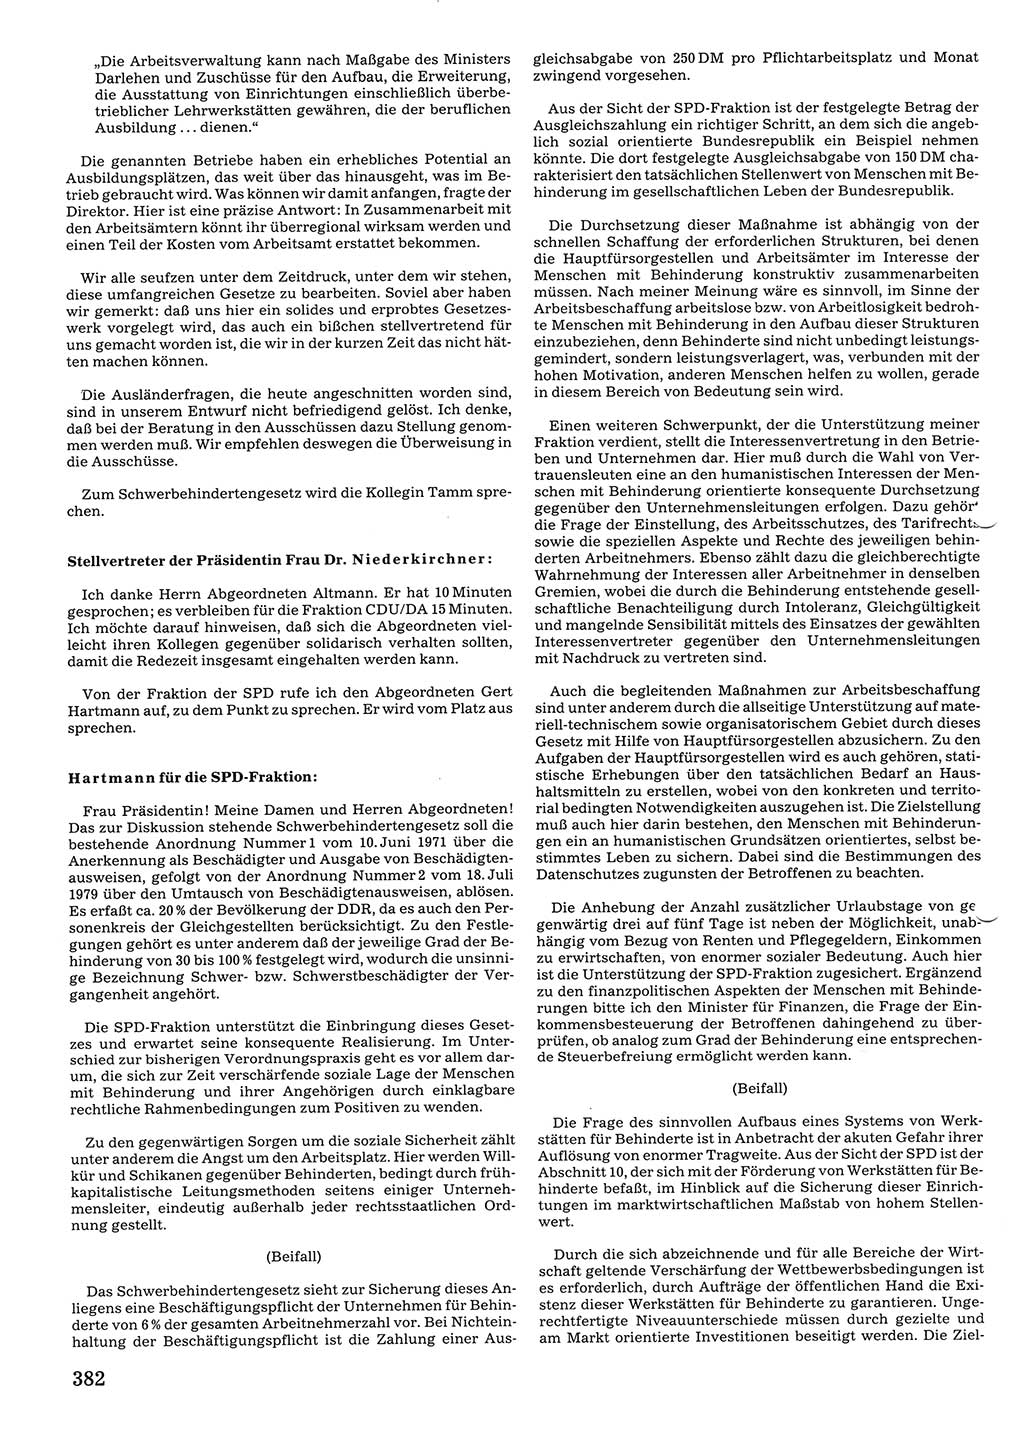 Tagungen der Volkskammer (VK) der Deutschen Demokratischen Republik (DDR), 10. Wahlperiode 1990, Seite 382 (VK. DDR 10. WP. 1990, Prot. Tg. 1-38, 5.4.-2.10.1990, S. 382)